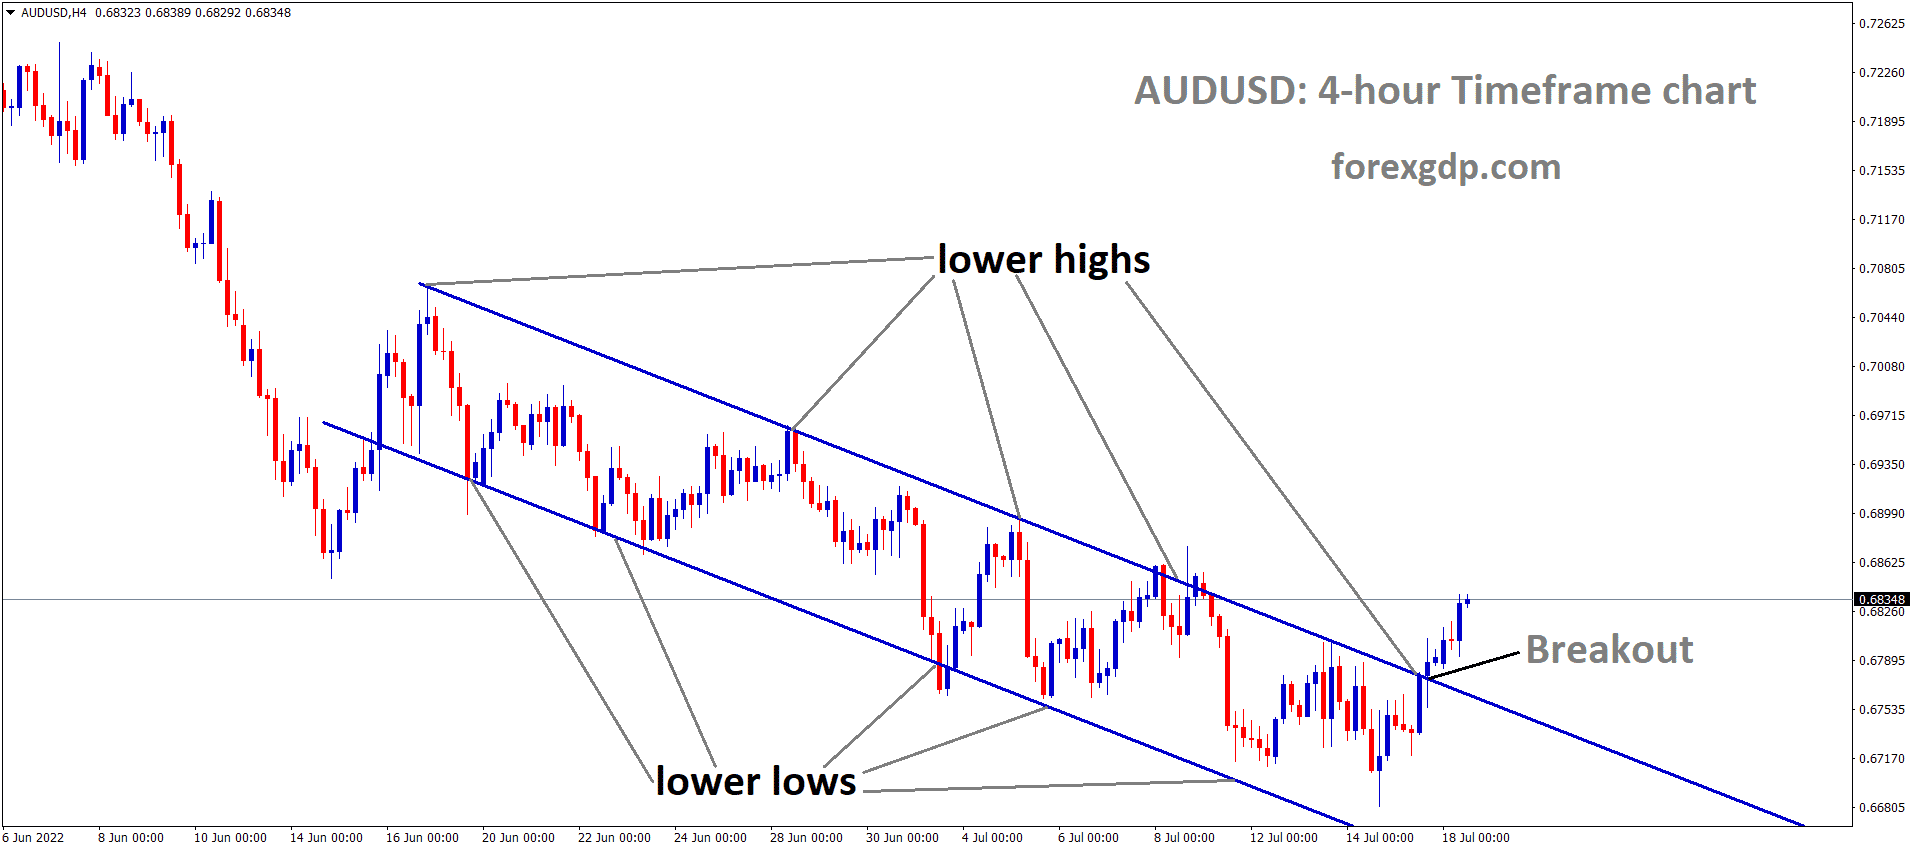 AUDUSD has broken the Descending channel in Upside.